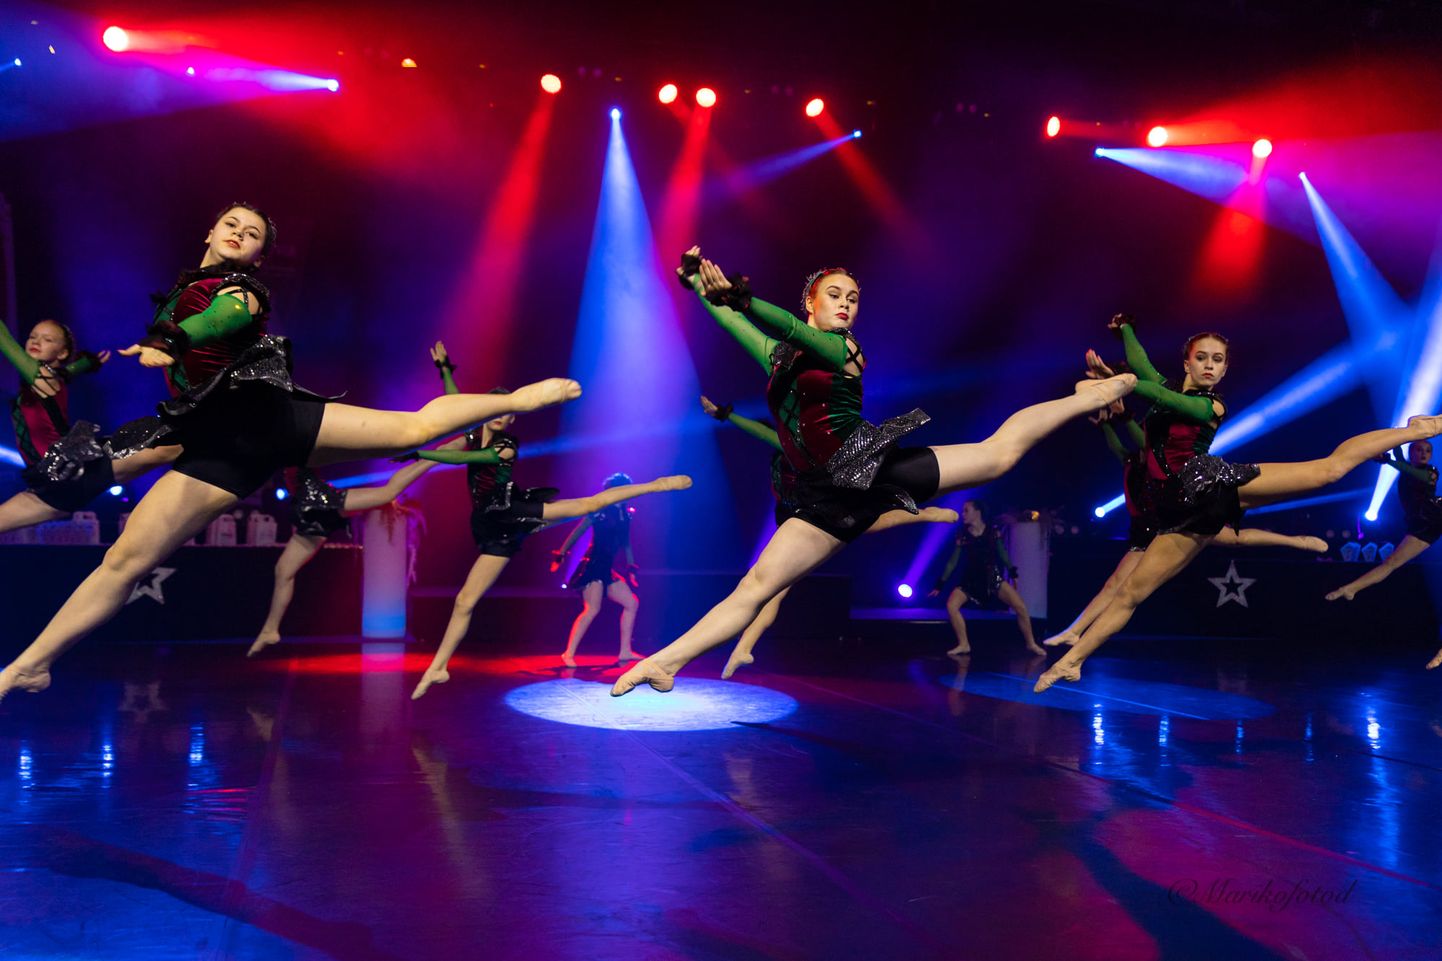 Võistlusel osaleb 1300 tantsijat, esindatud on ligi 40 erinevat tantsukooli üle Eesti.